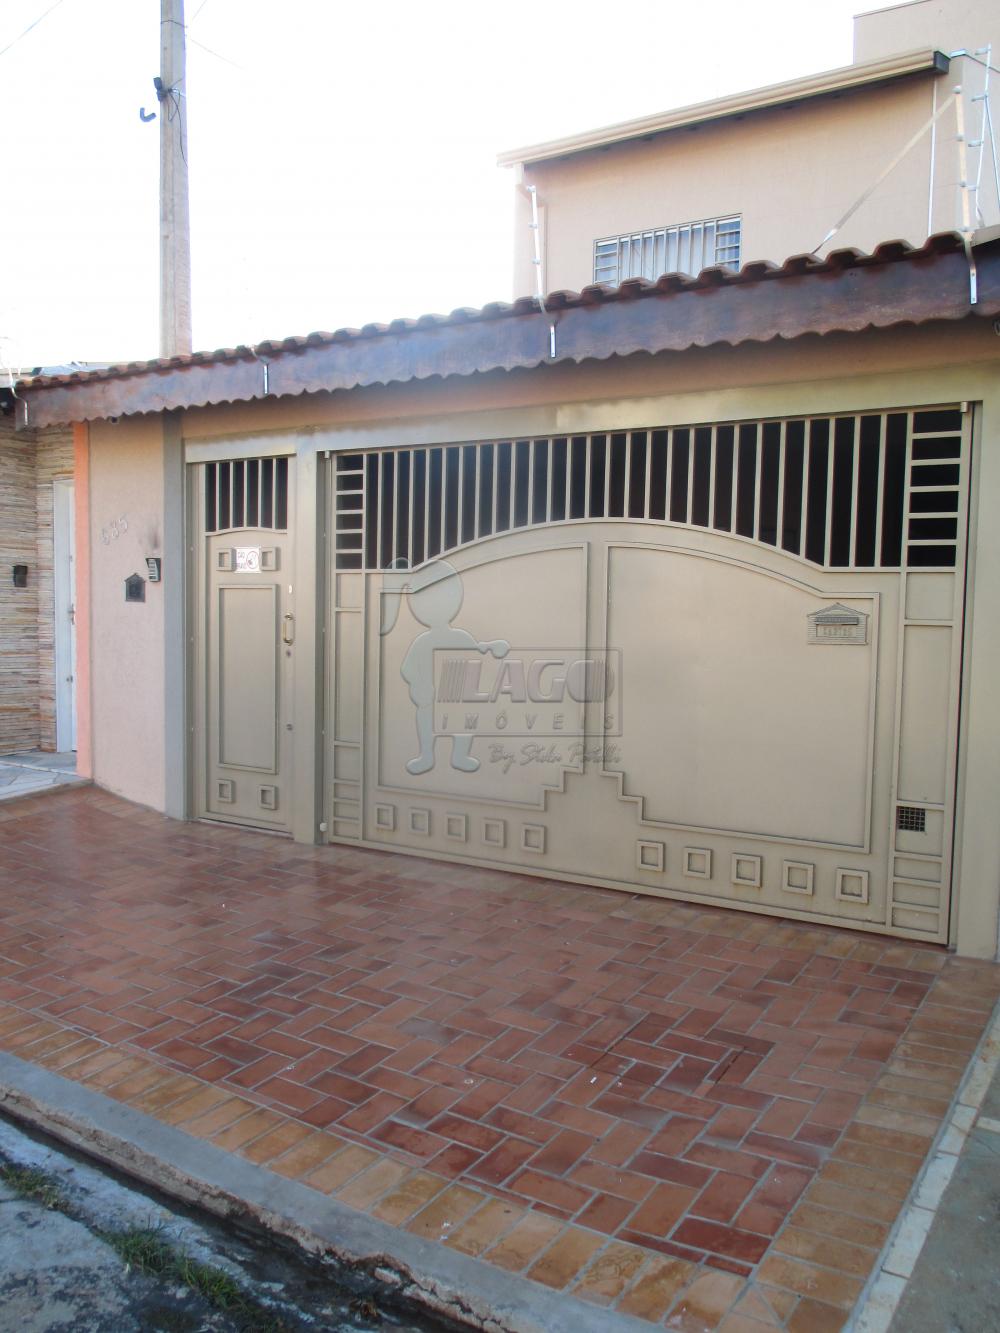 Alugar Casa / Padrão em Ribeirão Preto R$ 1.500,00 - Foto 11